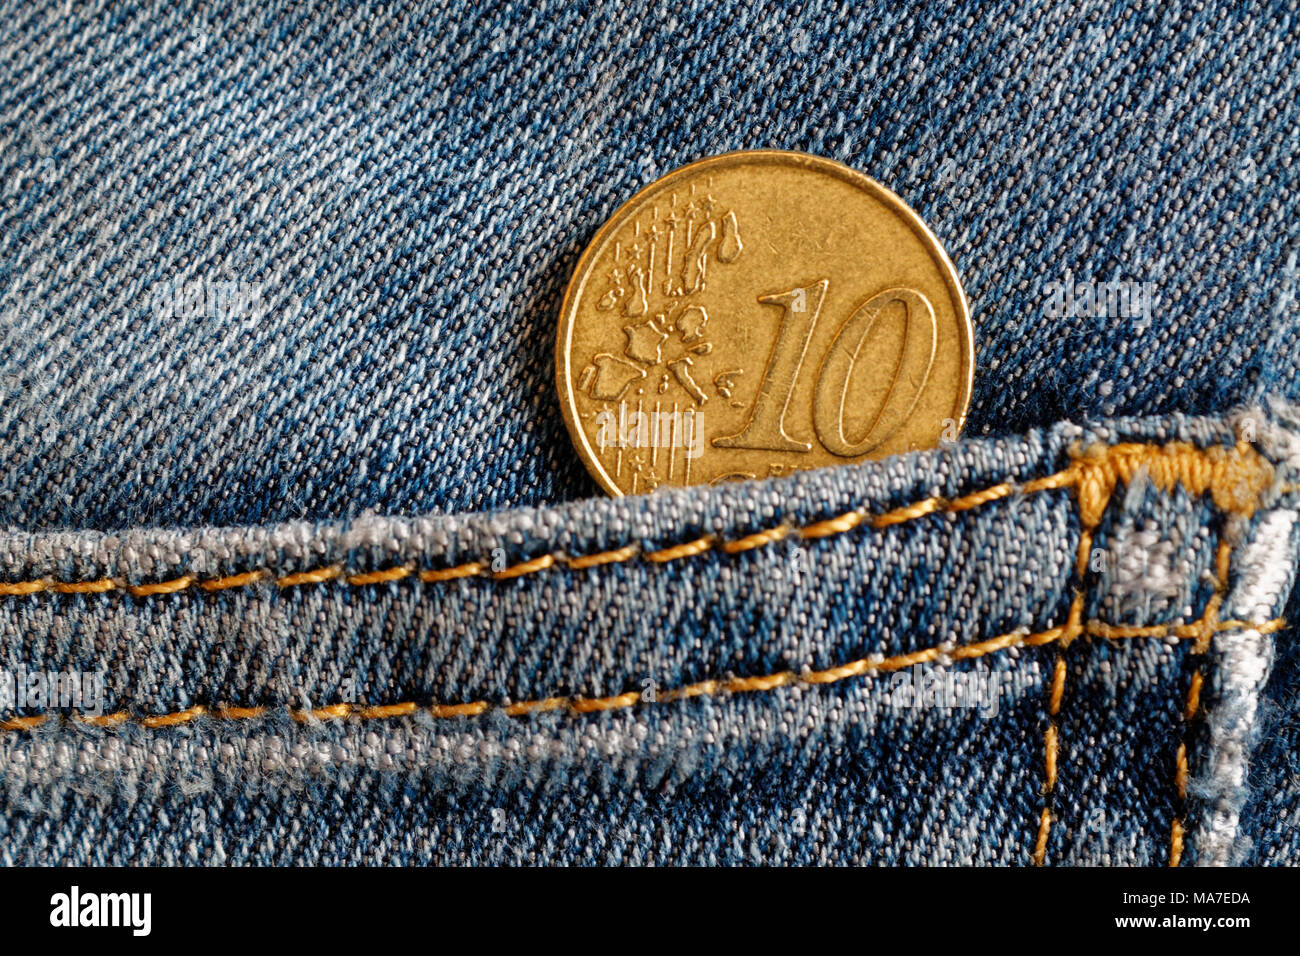 Pièce en euros d'une valeur nominale de 10 centimes d'euro dans la poche de jeans en denim bleu usé Banque D'Images